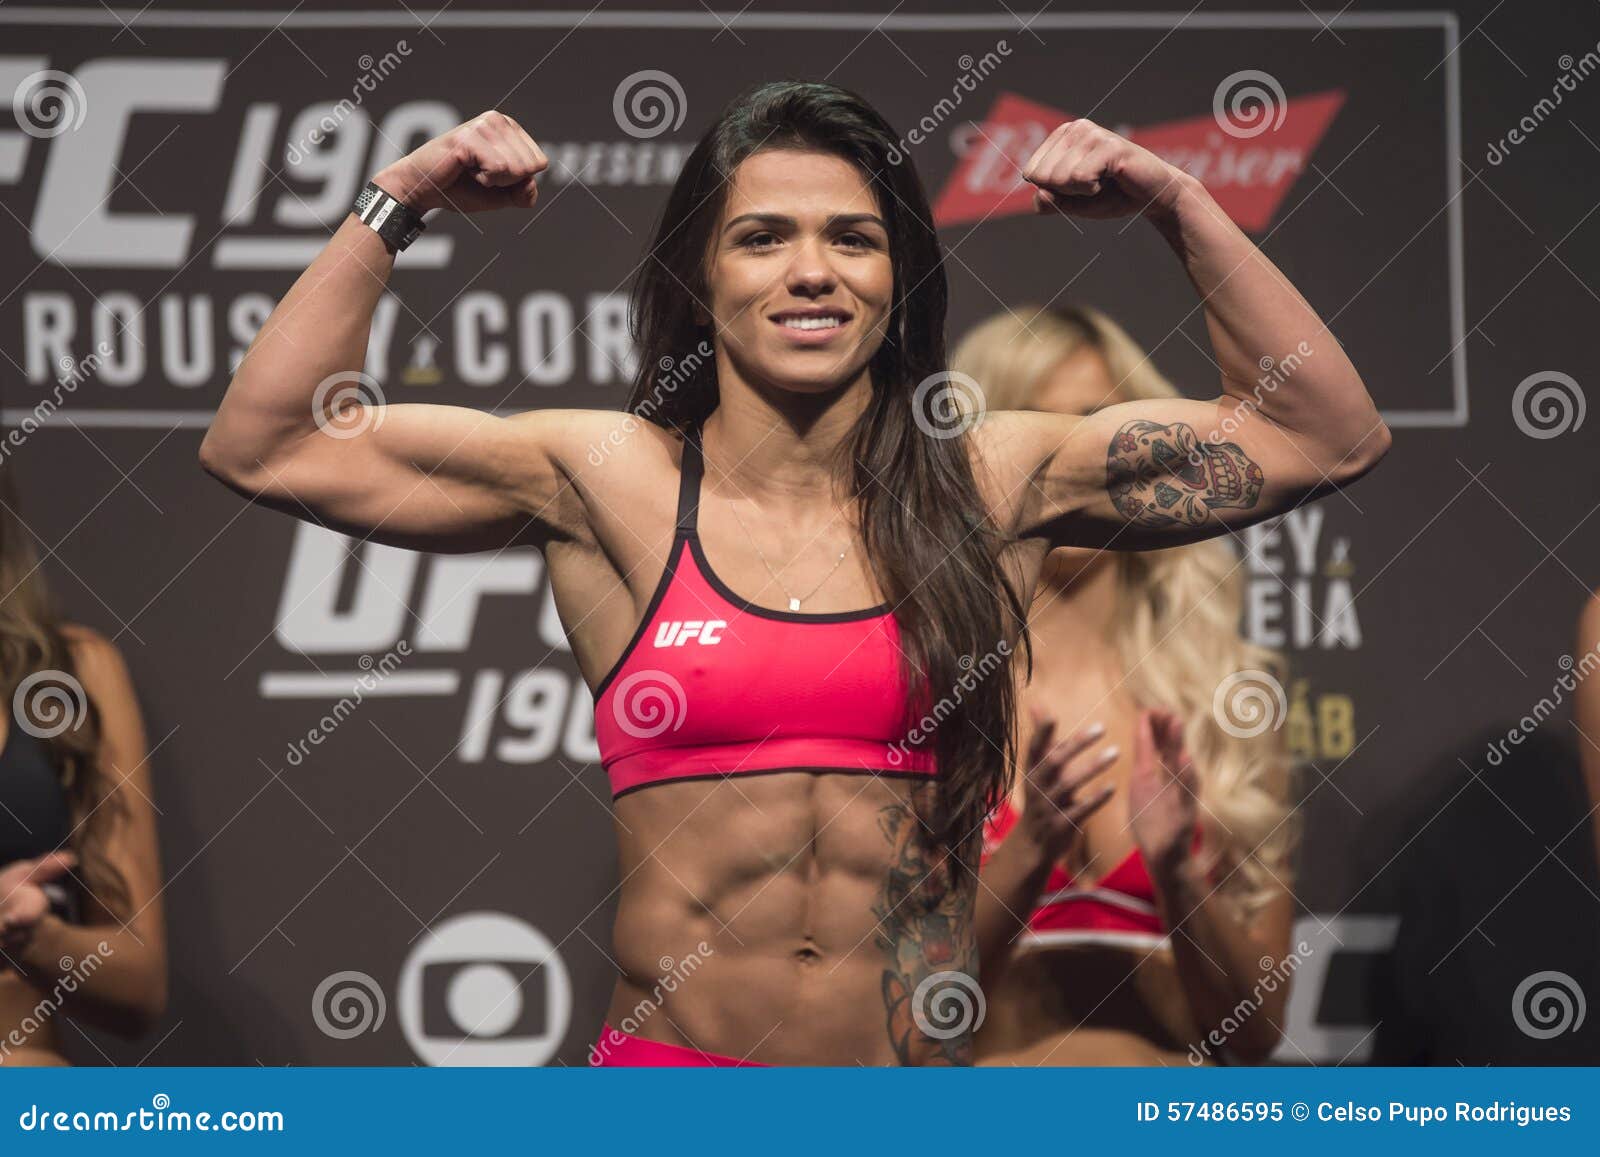 https://thumbs.dreamstime.com/z/ufc-rio-de-janeiro-brazil-july-jessica-aguiar-bra-fighter-weighing-57486595.jpg